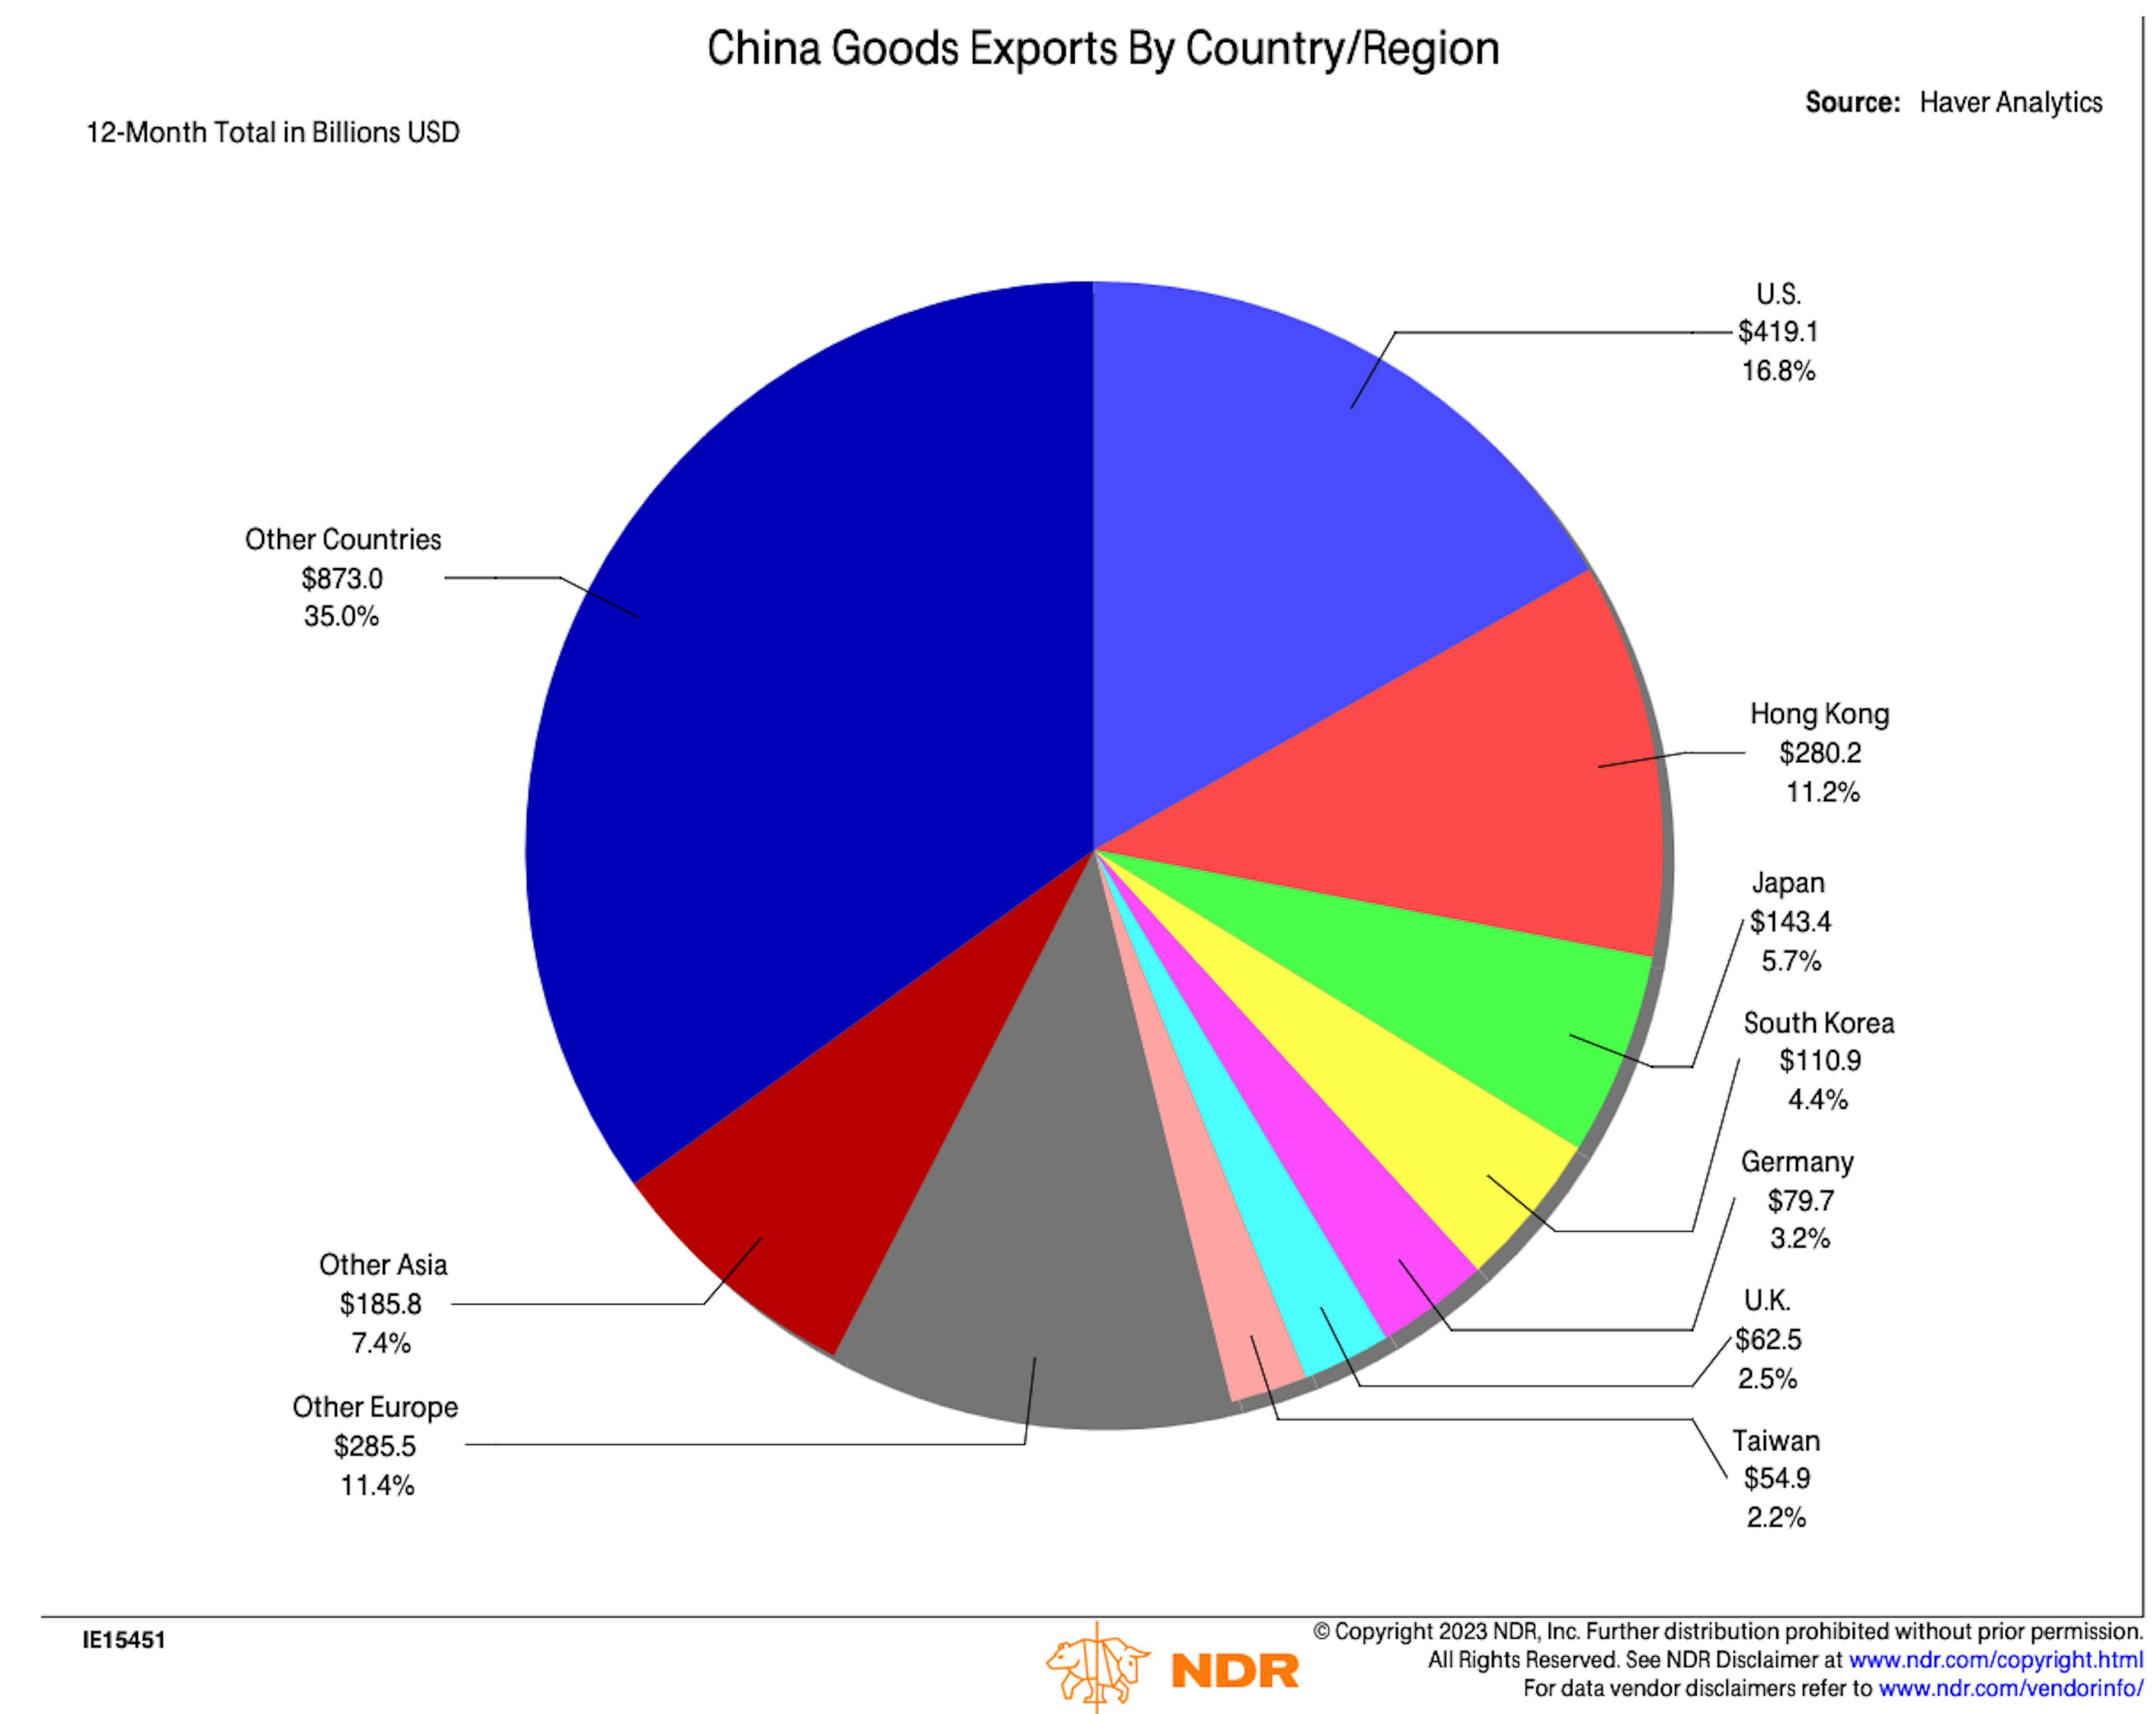 L’Amérique et l’Europe combinées constituent la plus grande destination des exportations chinoises.